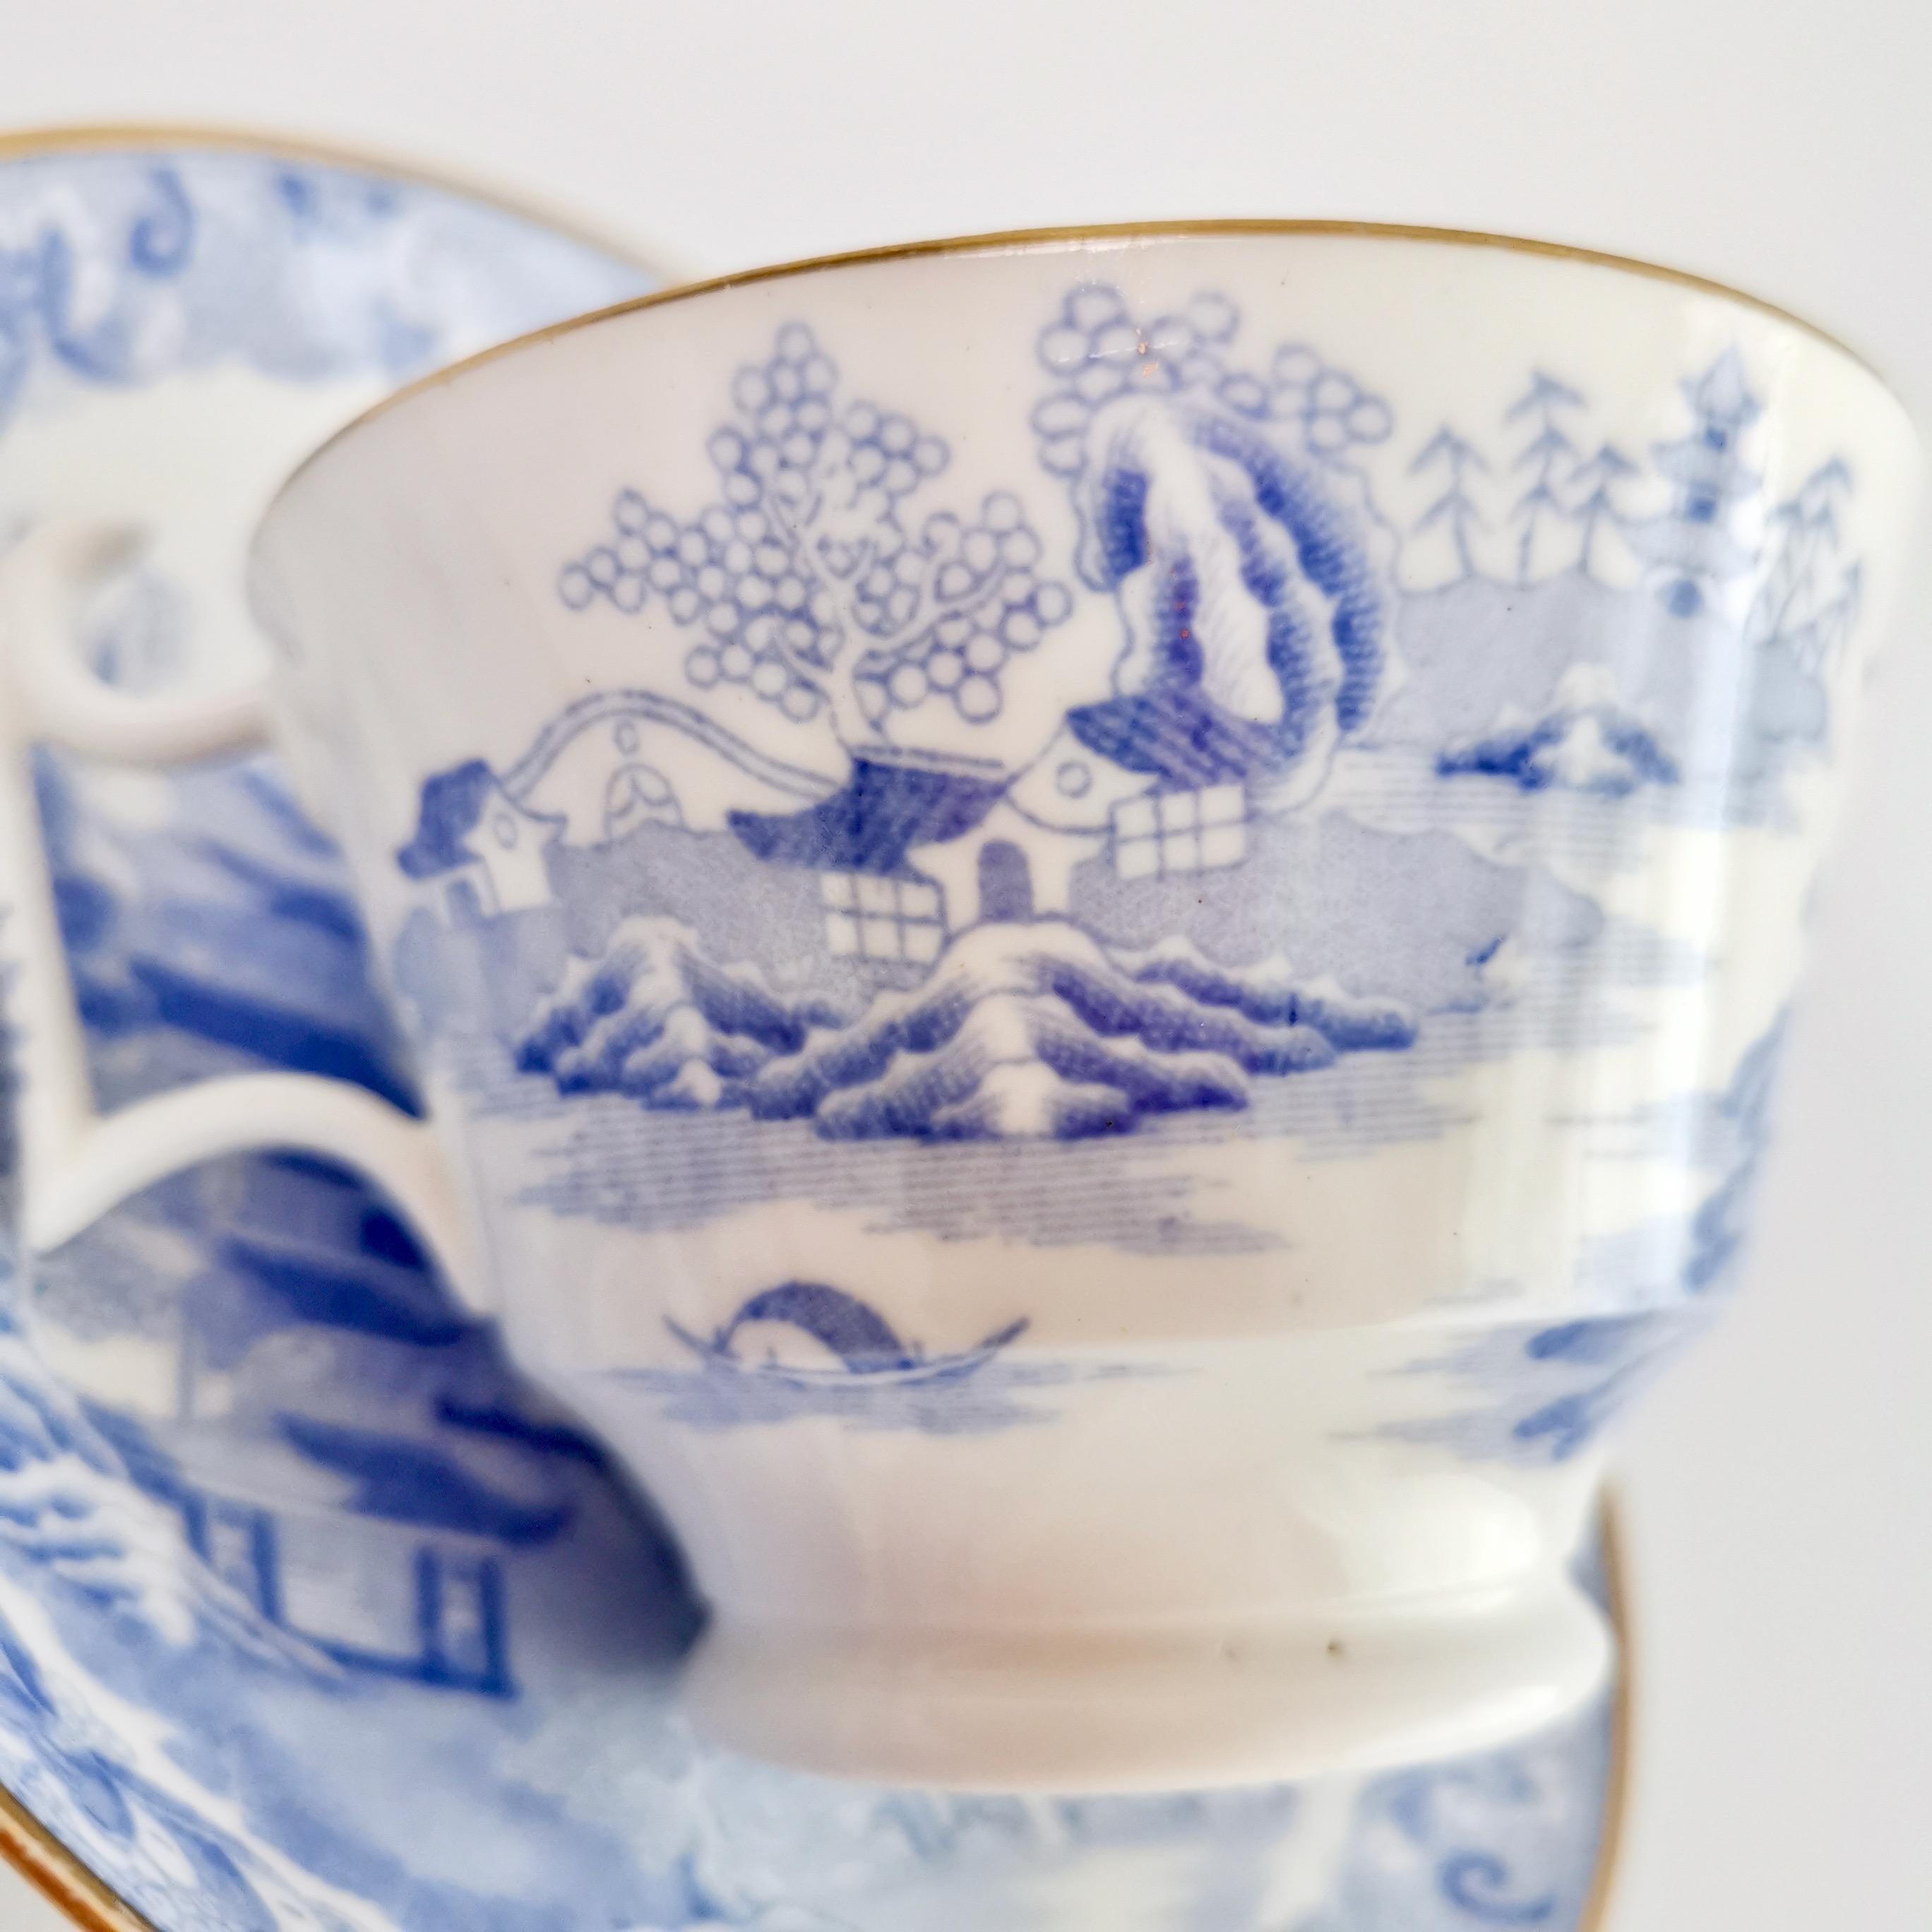 Spode Porcelain Teacup Trio, Brosely Pagoda Blue and White Transfer, ca 1815 5